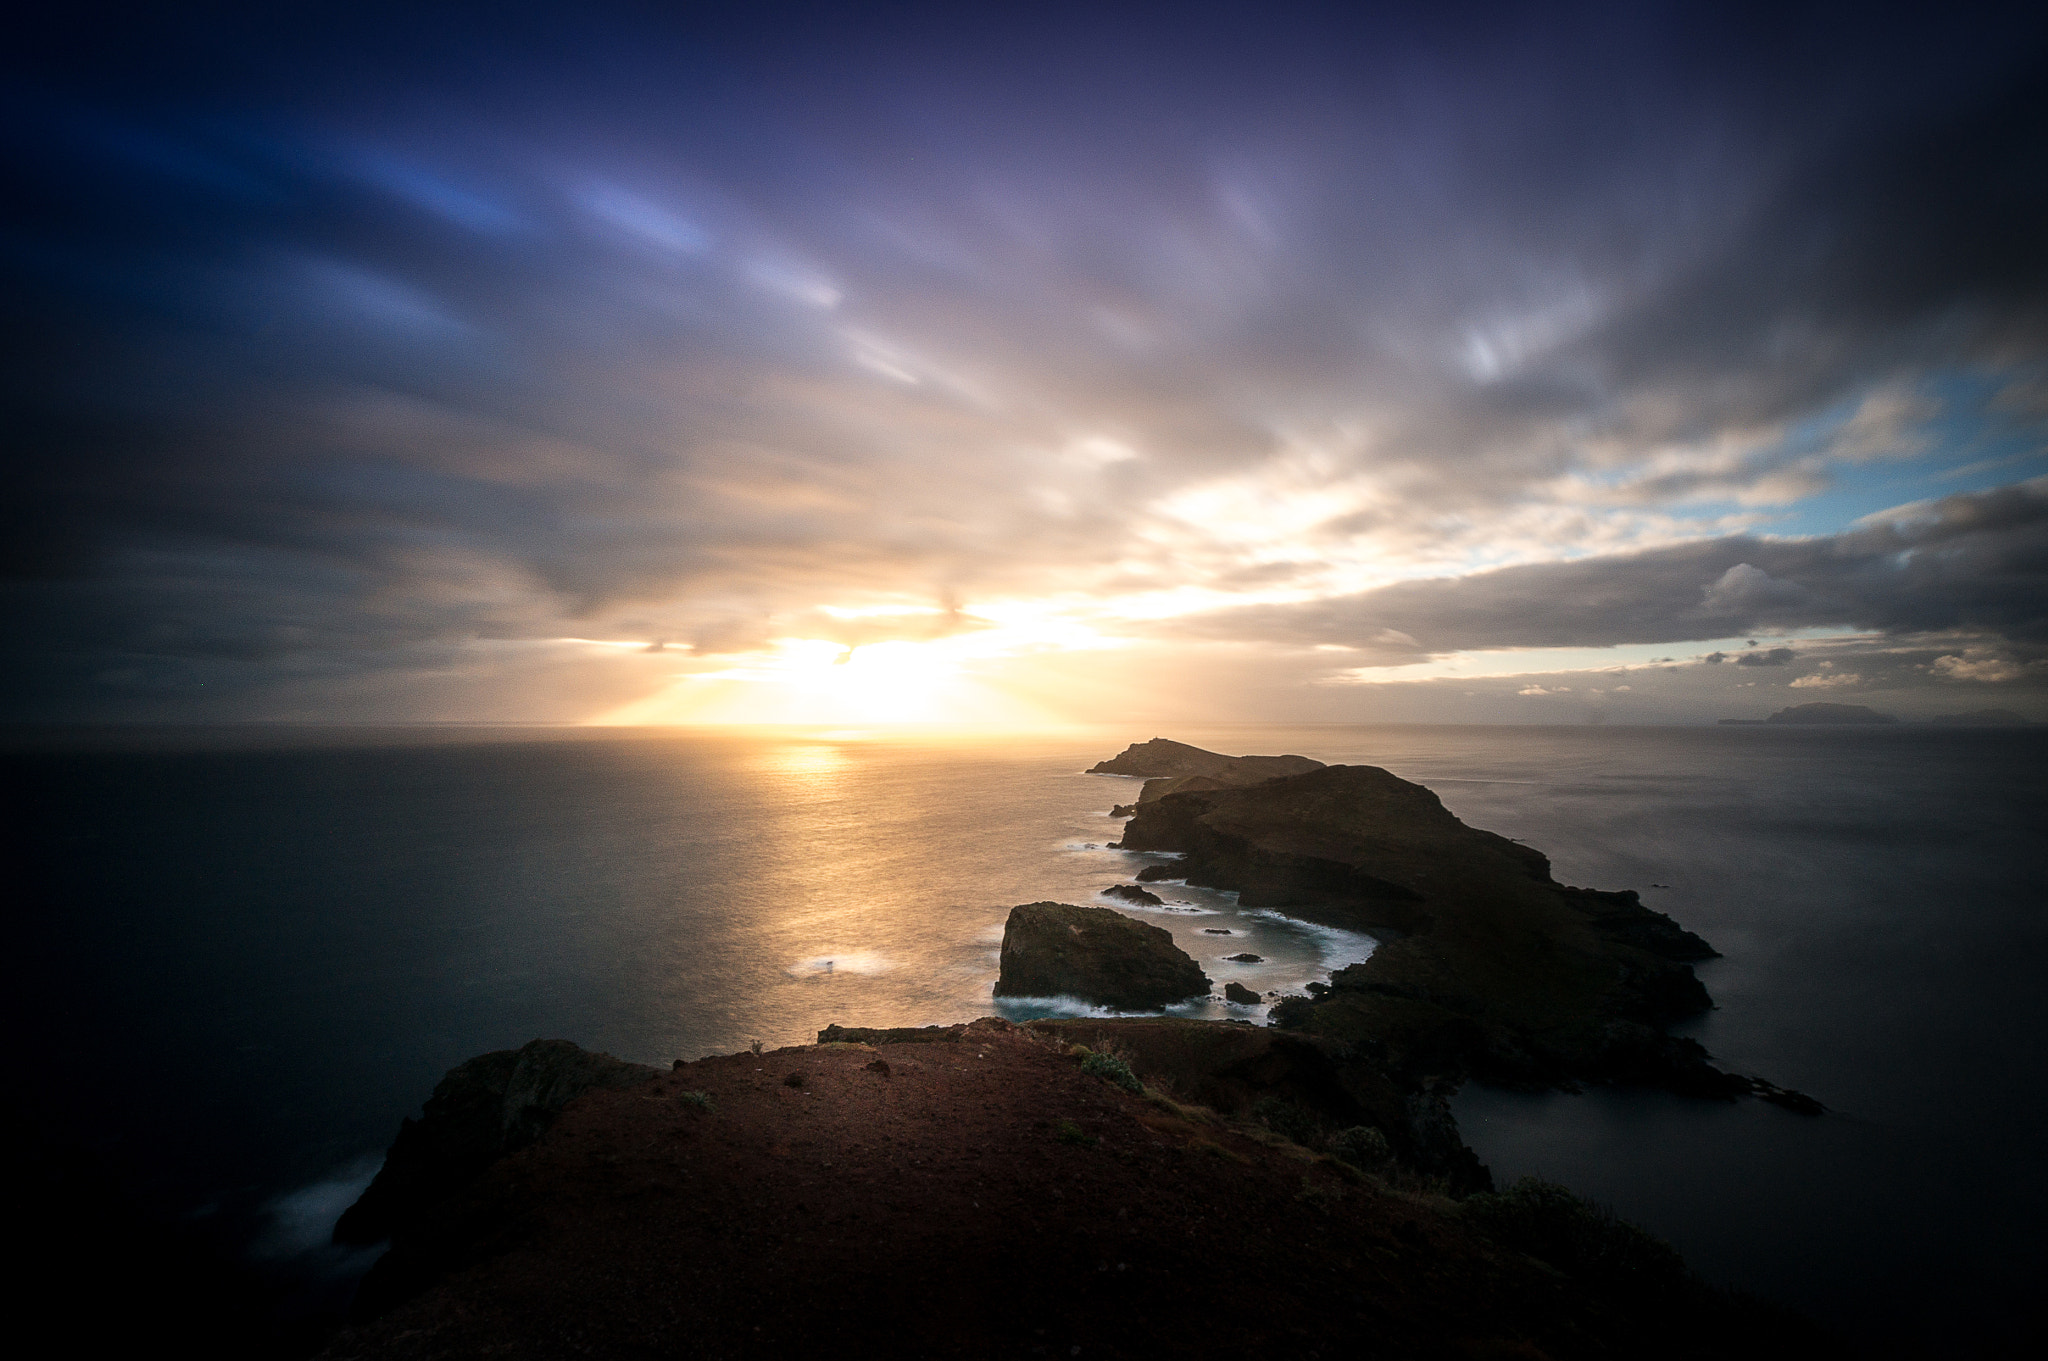 Sony Alpha NEX-6 + Sony E 10-18mm F4 OSS sample photo. Sunrise over the ocean photography